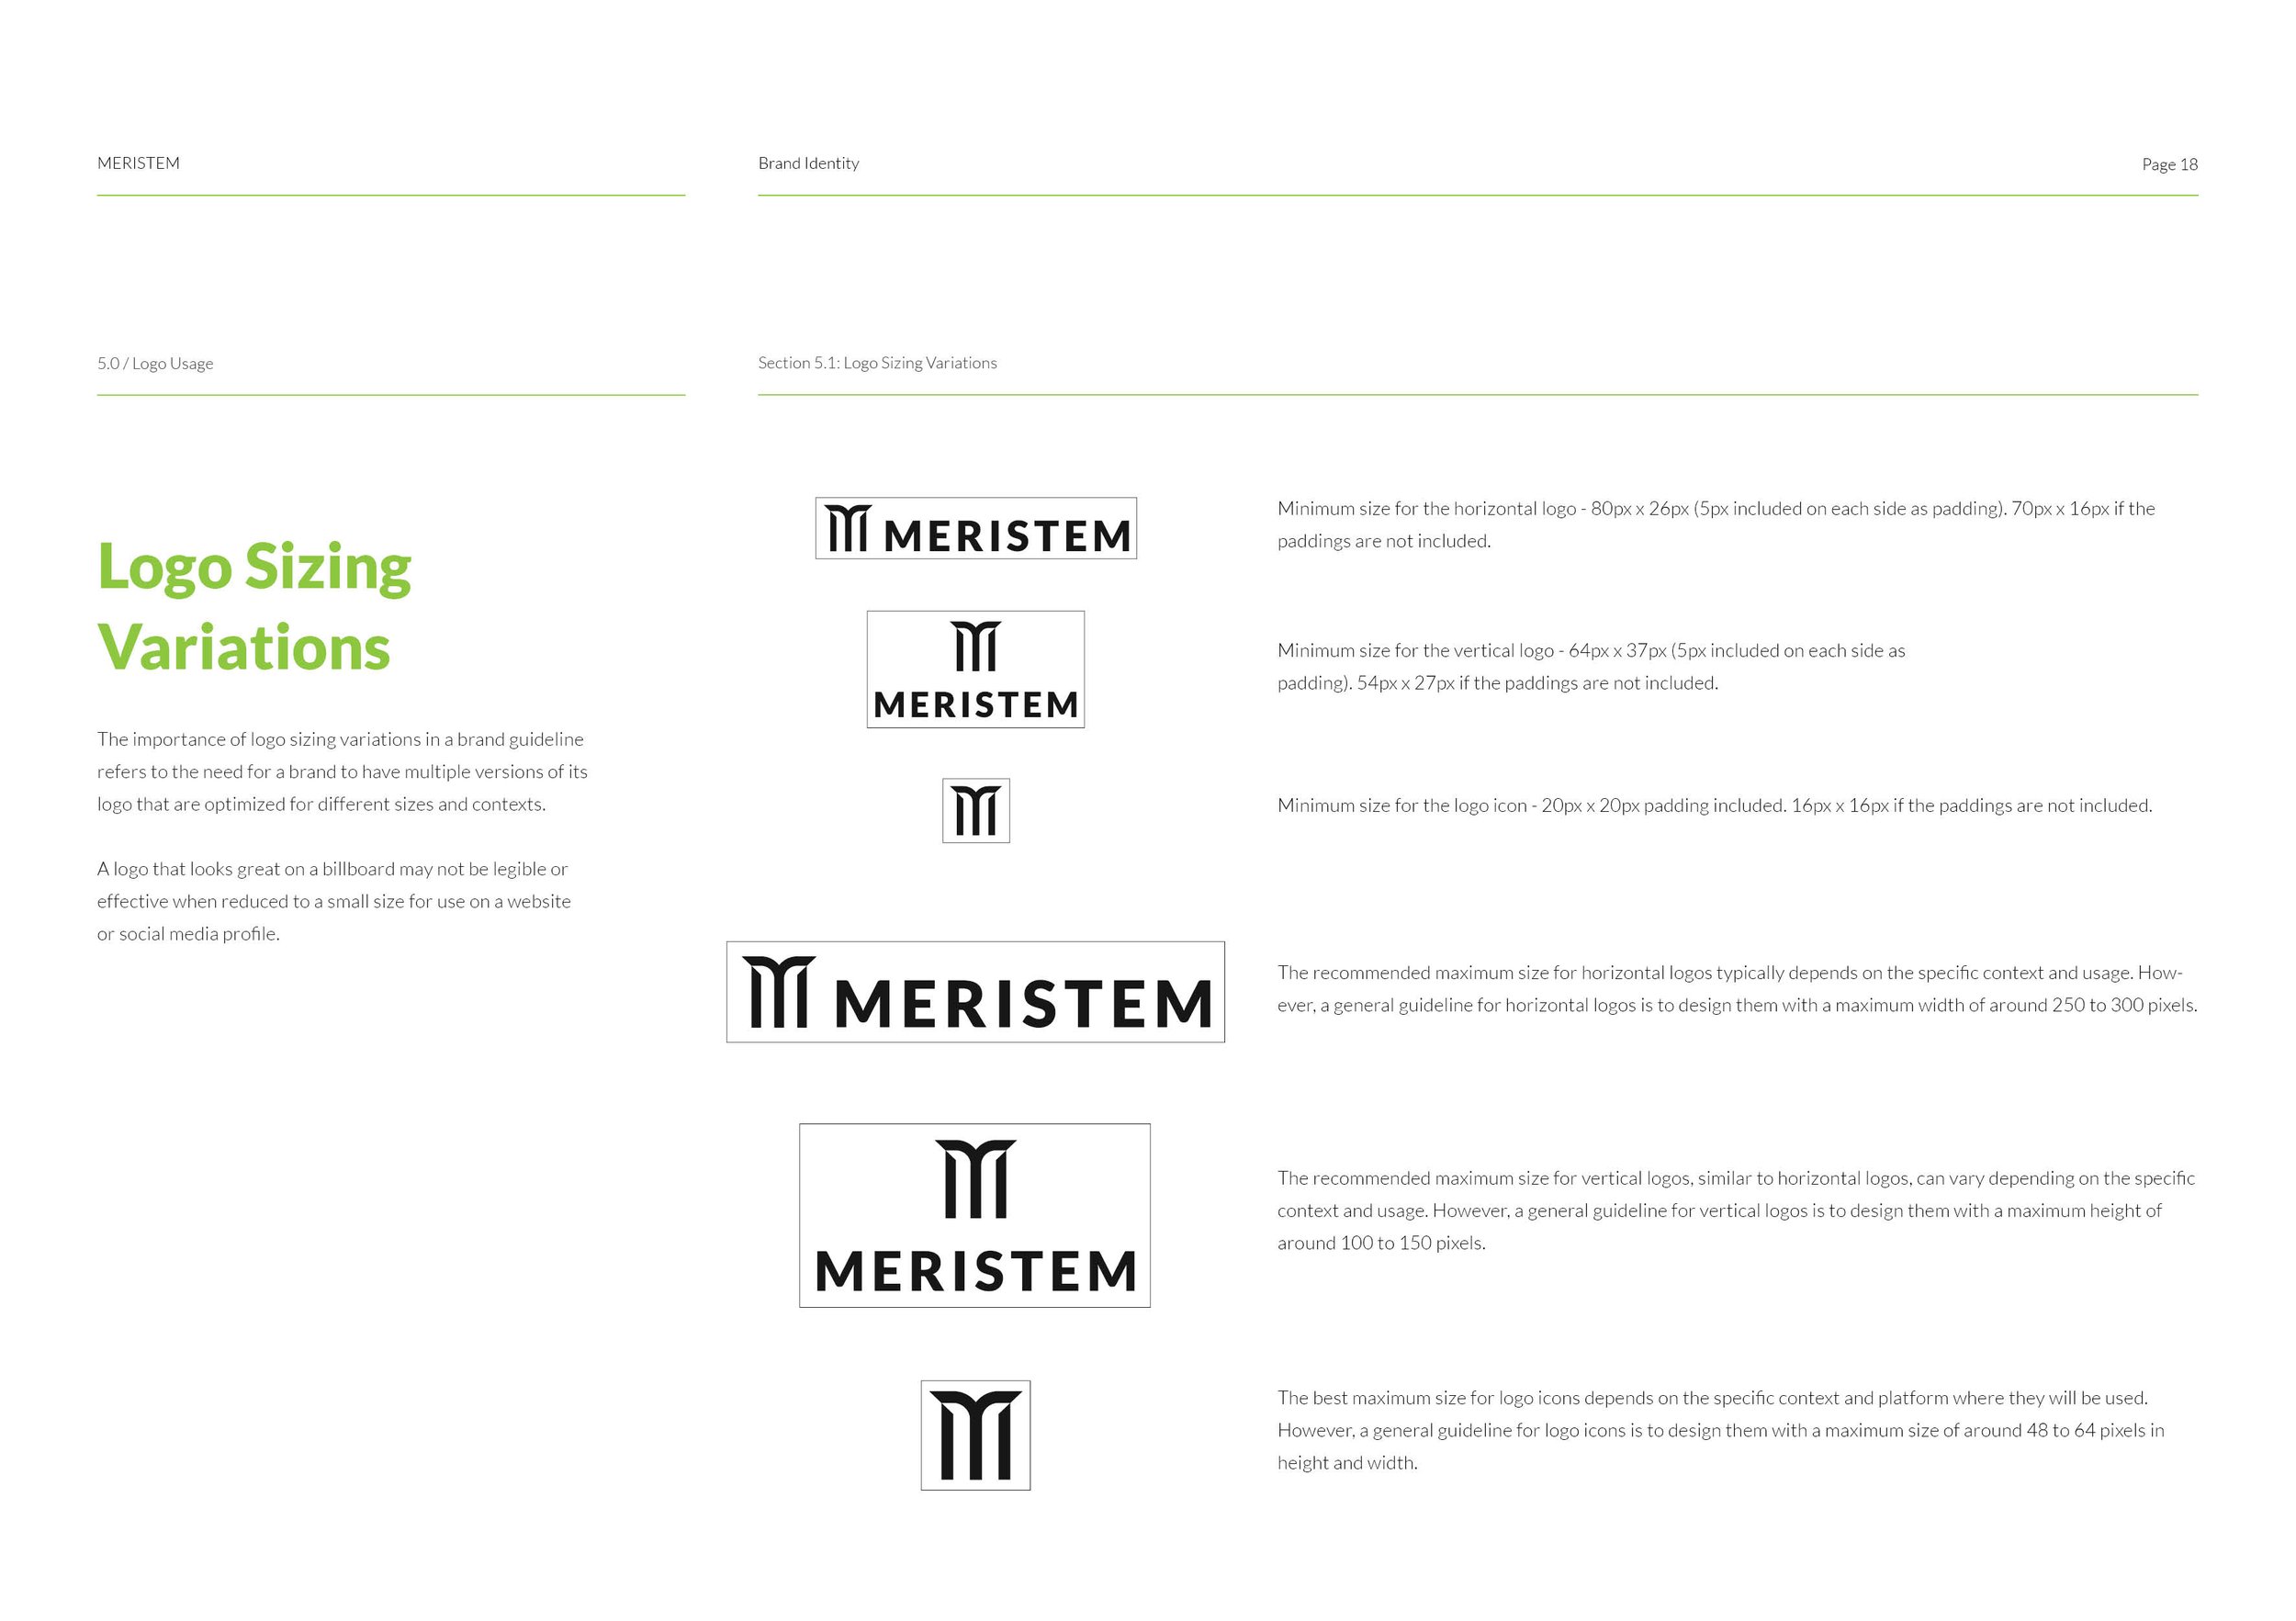 MERISTEM - Brand Identity18.jpg